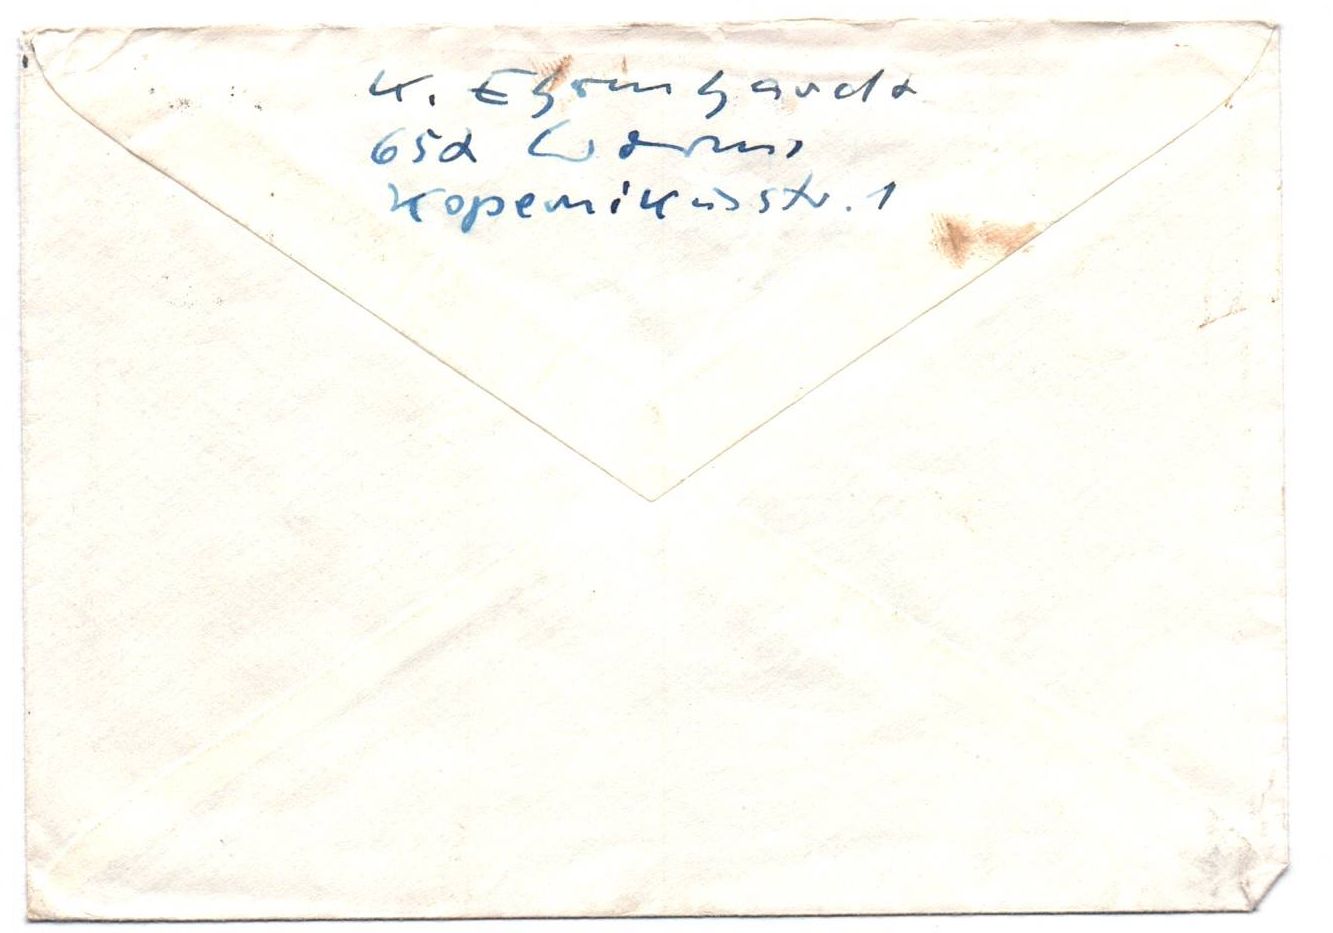 Brief 1965 DDR BRD Revanche Hetze 20 Jahre Vertreibung Postkrieg Schwärzung